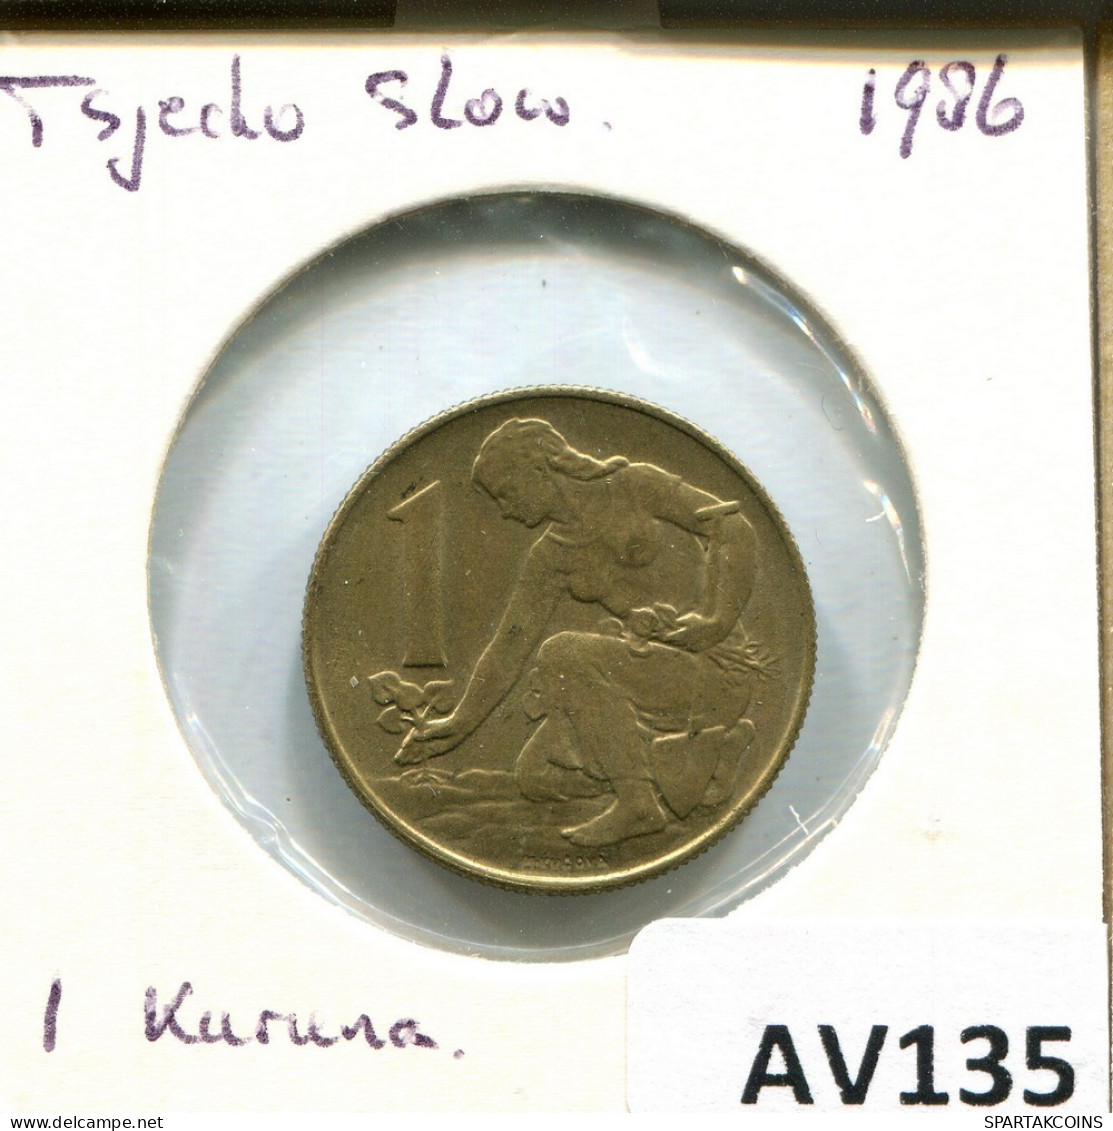 1 KORUNA 1986 TSCHECHOSLOWAKEI CZECHOSLOWAKEI SLOVAKIA Münze #AV135.D.A - Tschechoslowakei